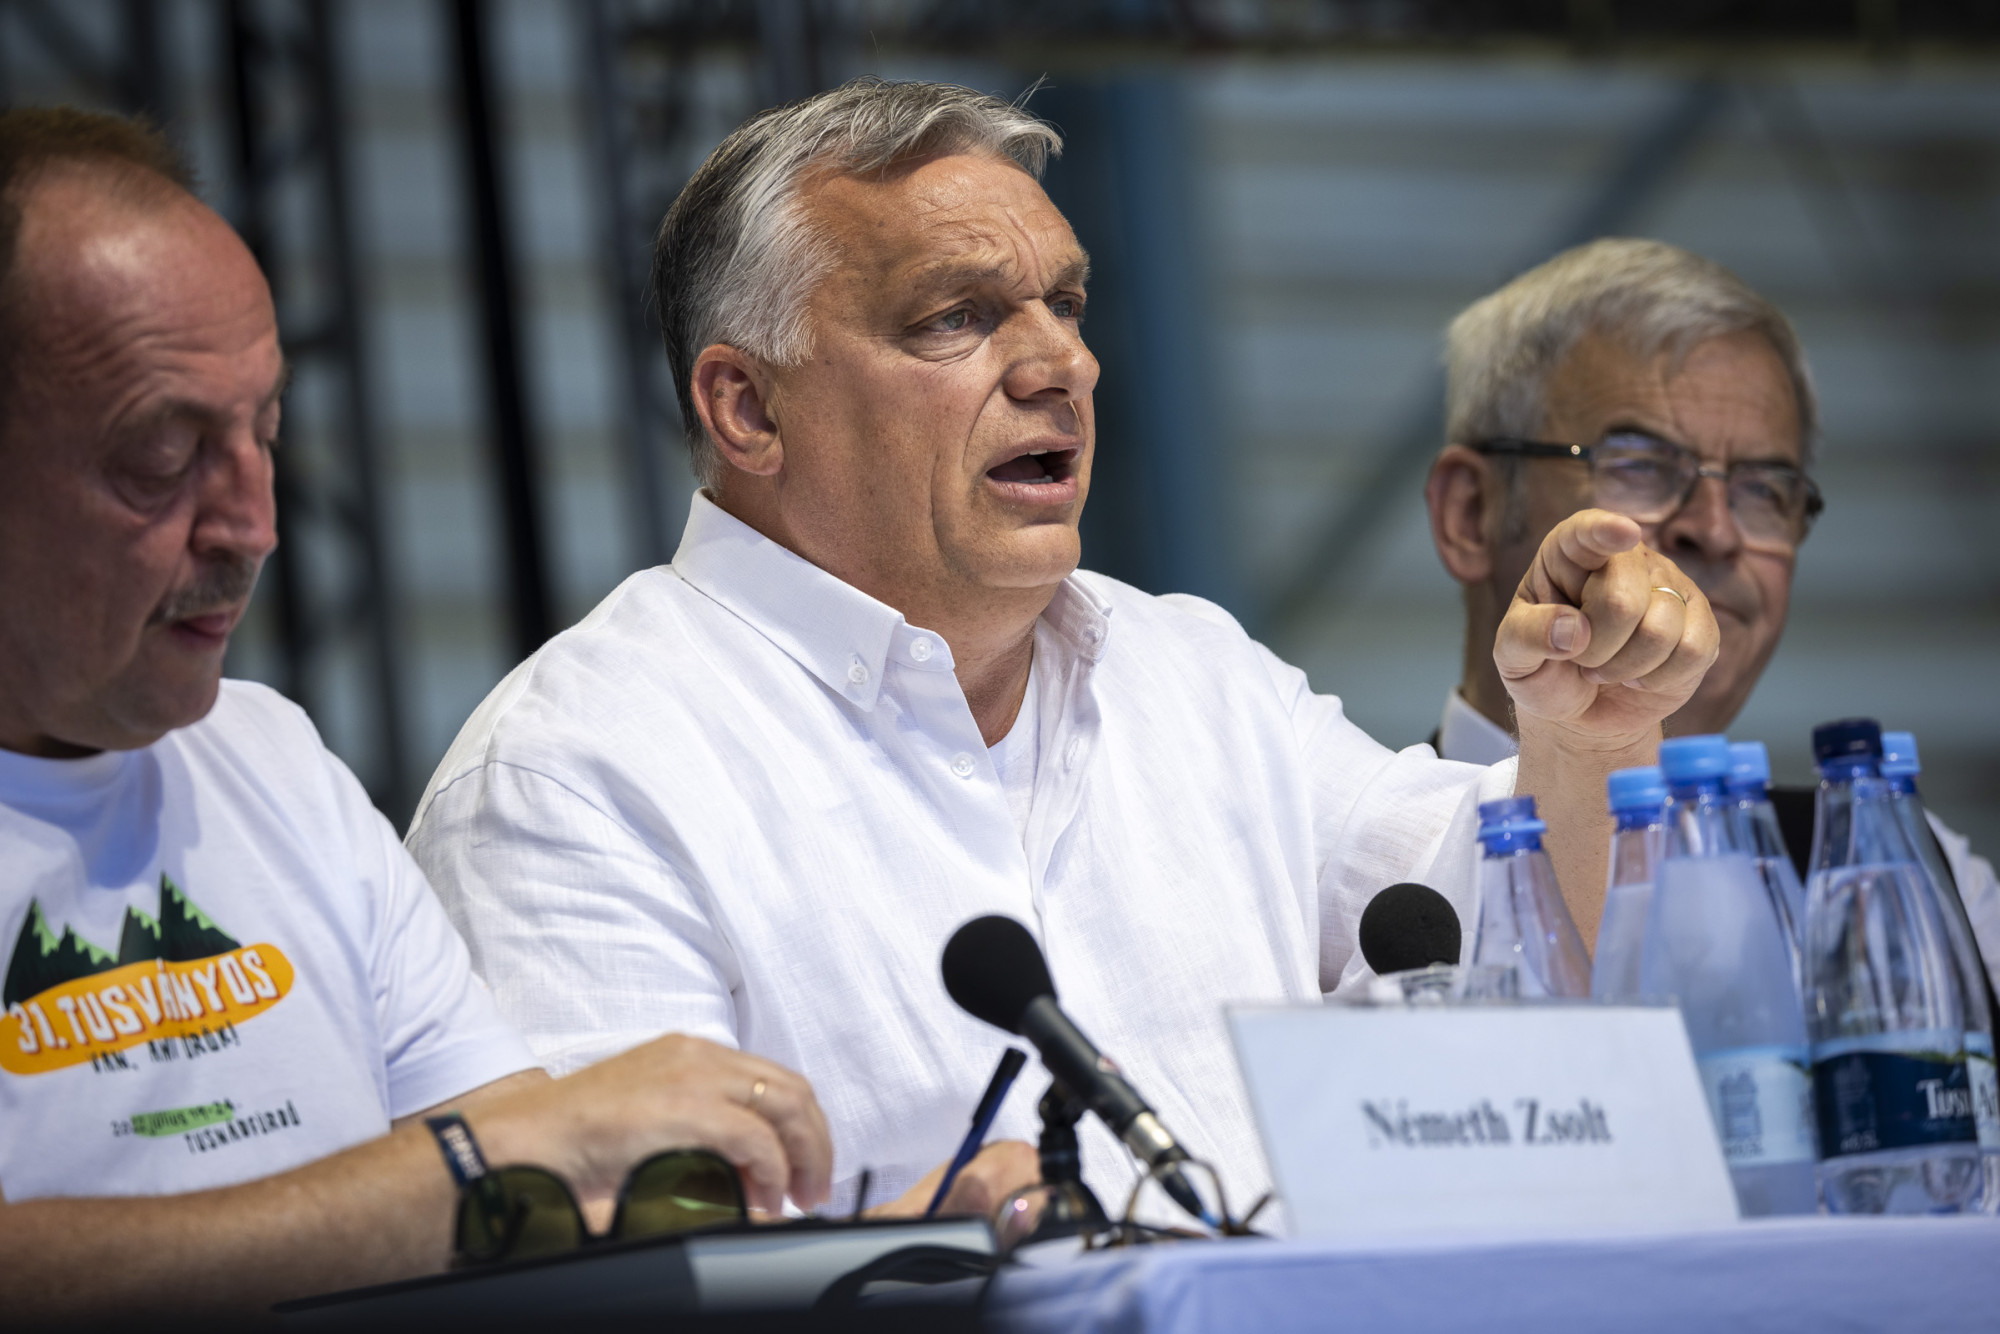 „Megbocsáthatatlan” – ezzel kommentálta Orbán fajkeveredéses szövegét az amerikai külügy